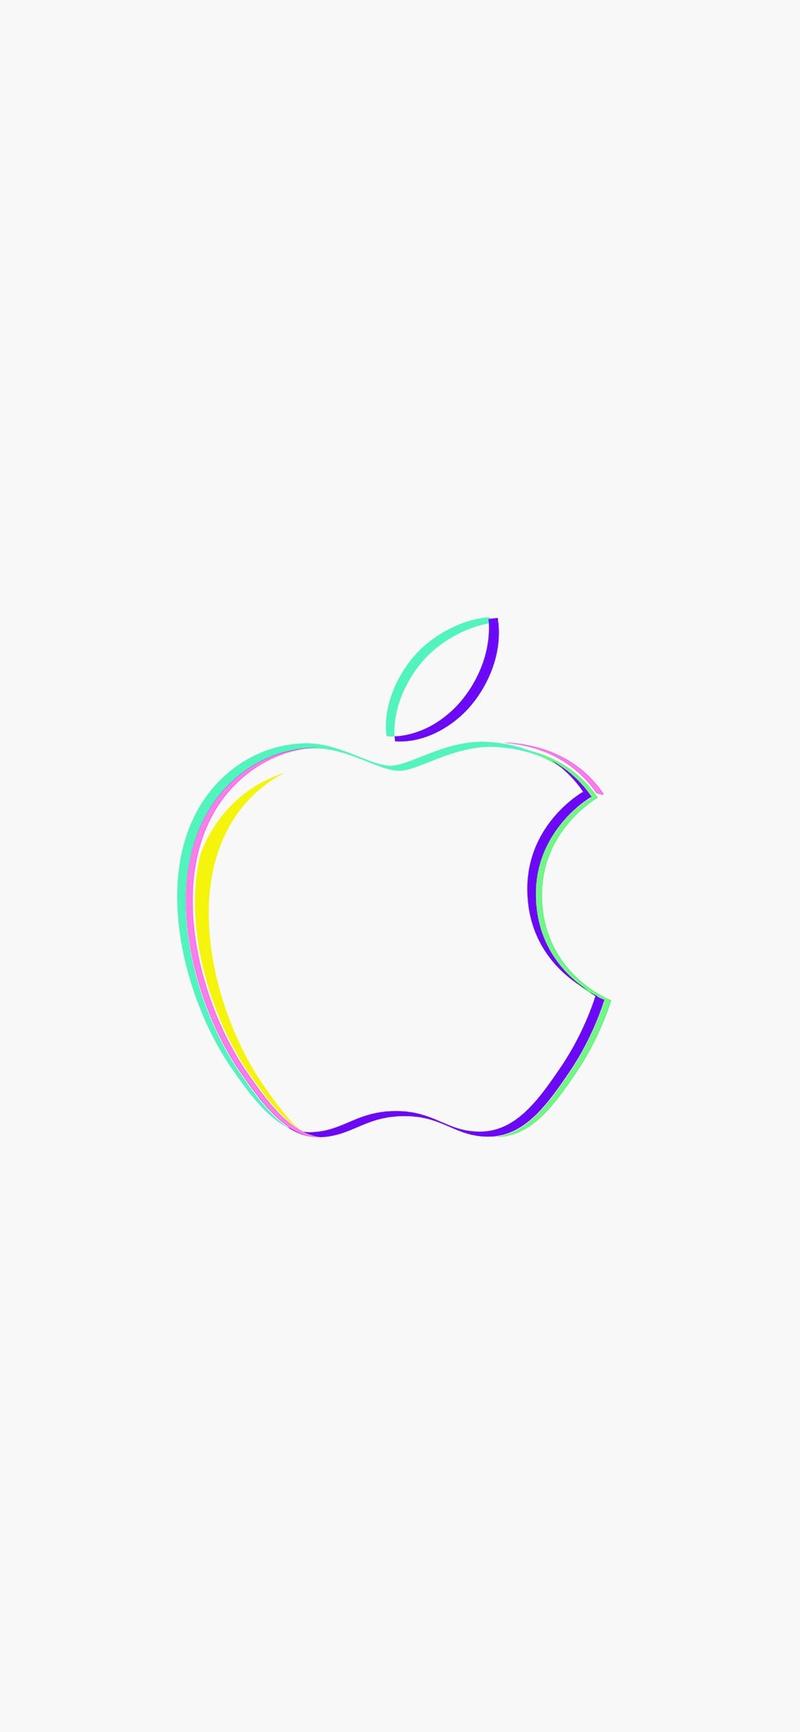 手机壁纸:苹果logo多彩绚丽纯白手机壁纸